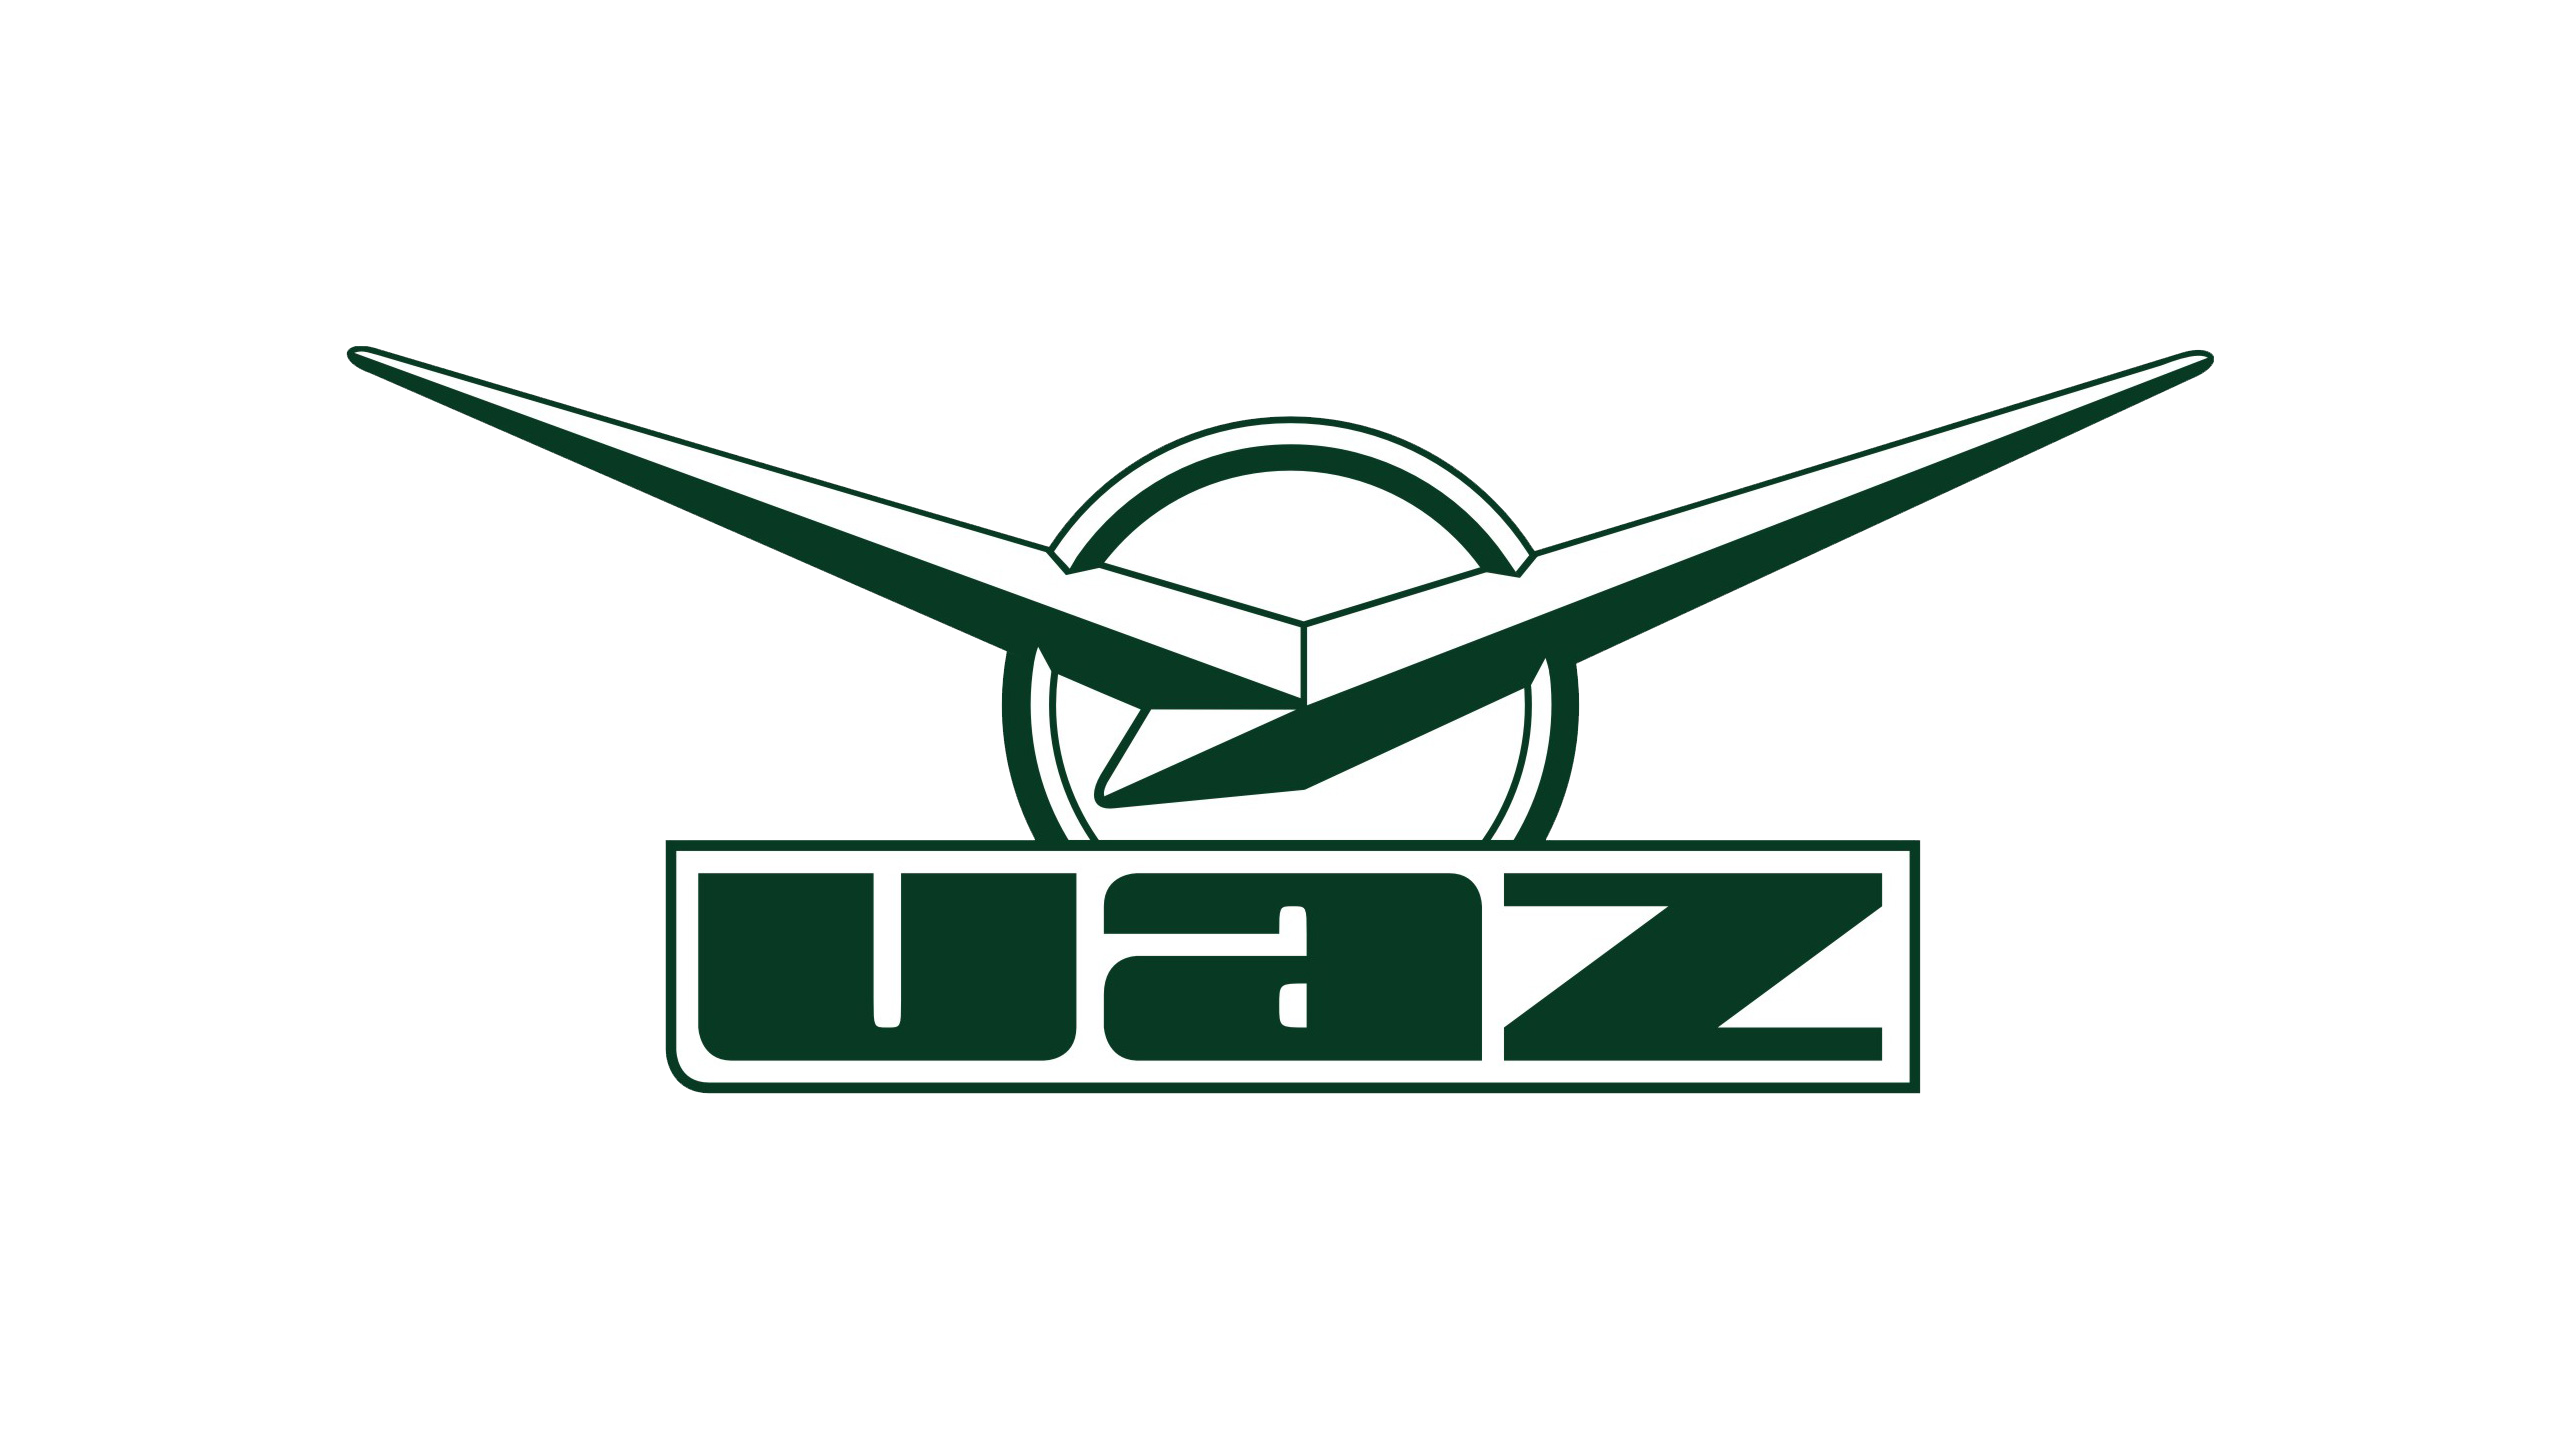 УАЗ логотип. Логотип УАЗ Патриот. УАЗ лого PNG. Логотип УАЗ gif. Что символизирует символ уаз